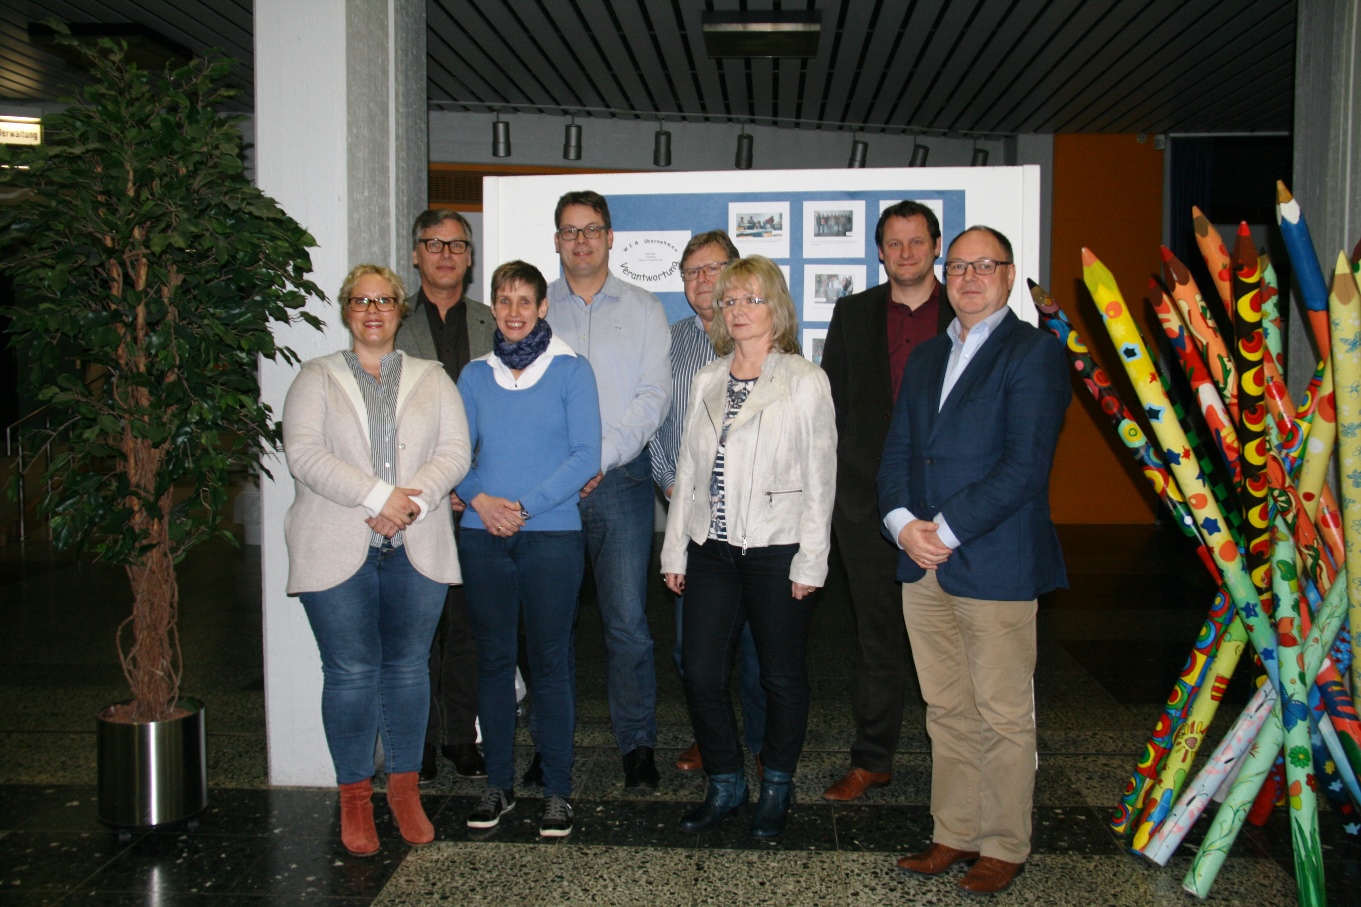 von links: Sabine Heinrichs, Albert Zaunbrecher, Anika Lenzen, Arndt Franzen, Theo Vergossen, Eva Helmgens, Guido Kremers, Wilfried Jöris